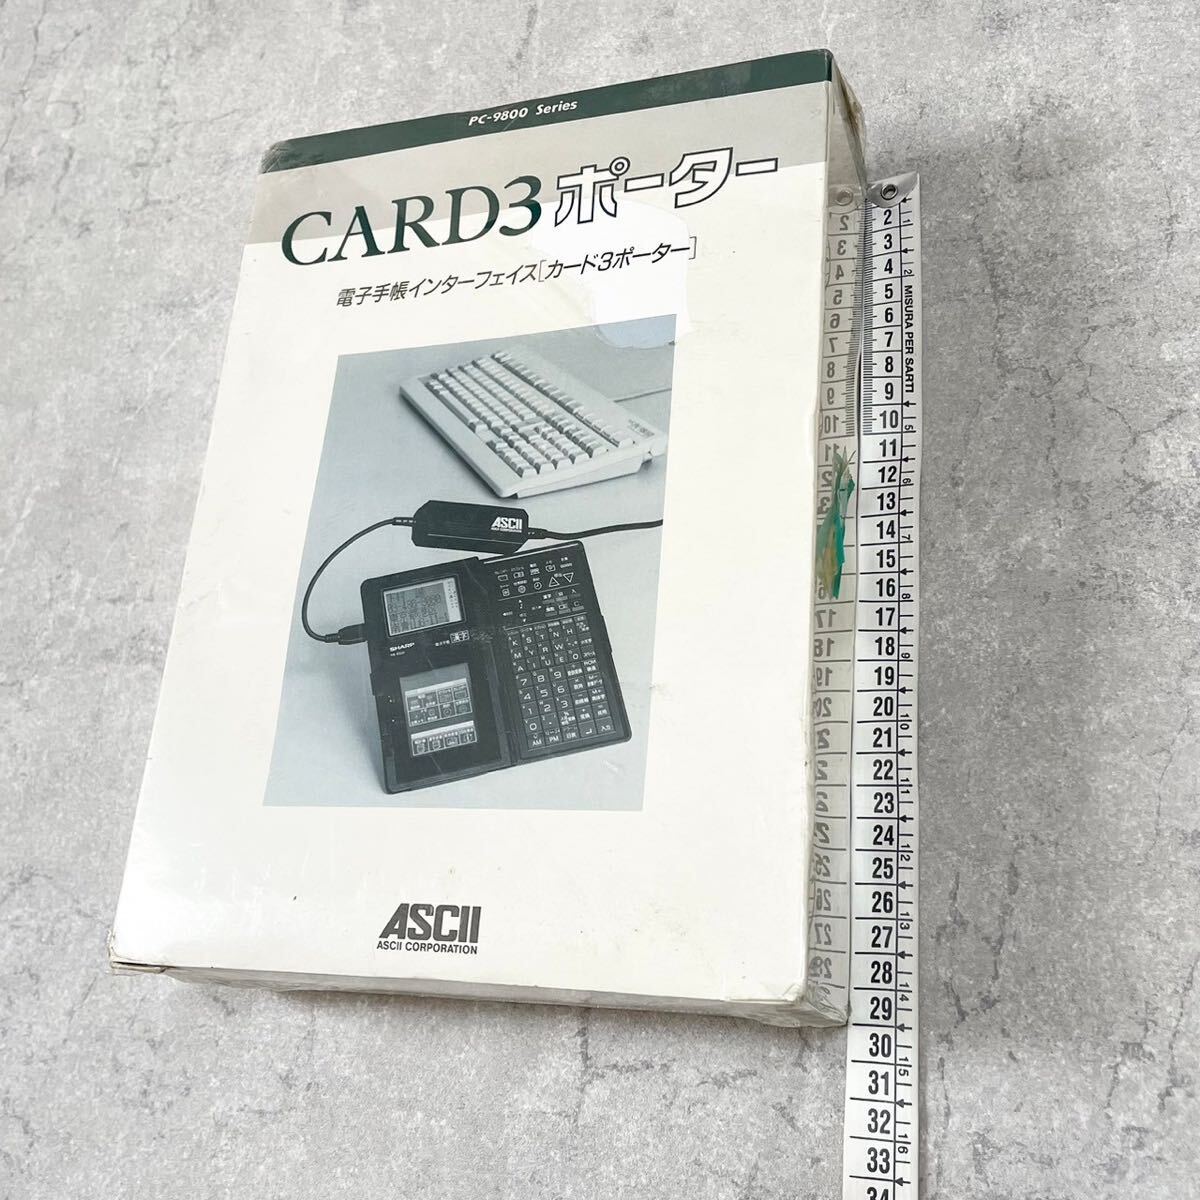 【EW240194】 アスキー CARD3ポーター 電子手帳インターフェイス PC-9800の画像6